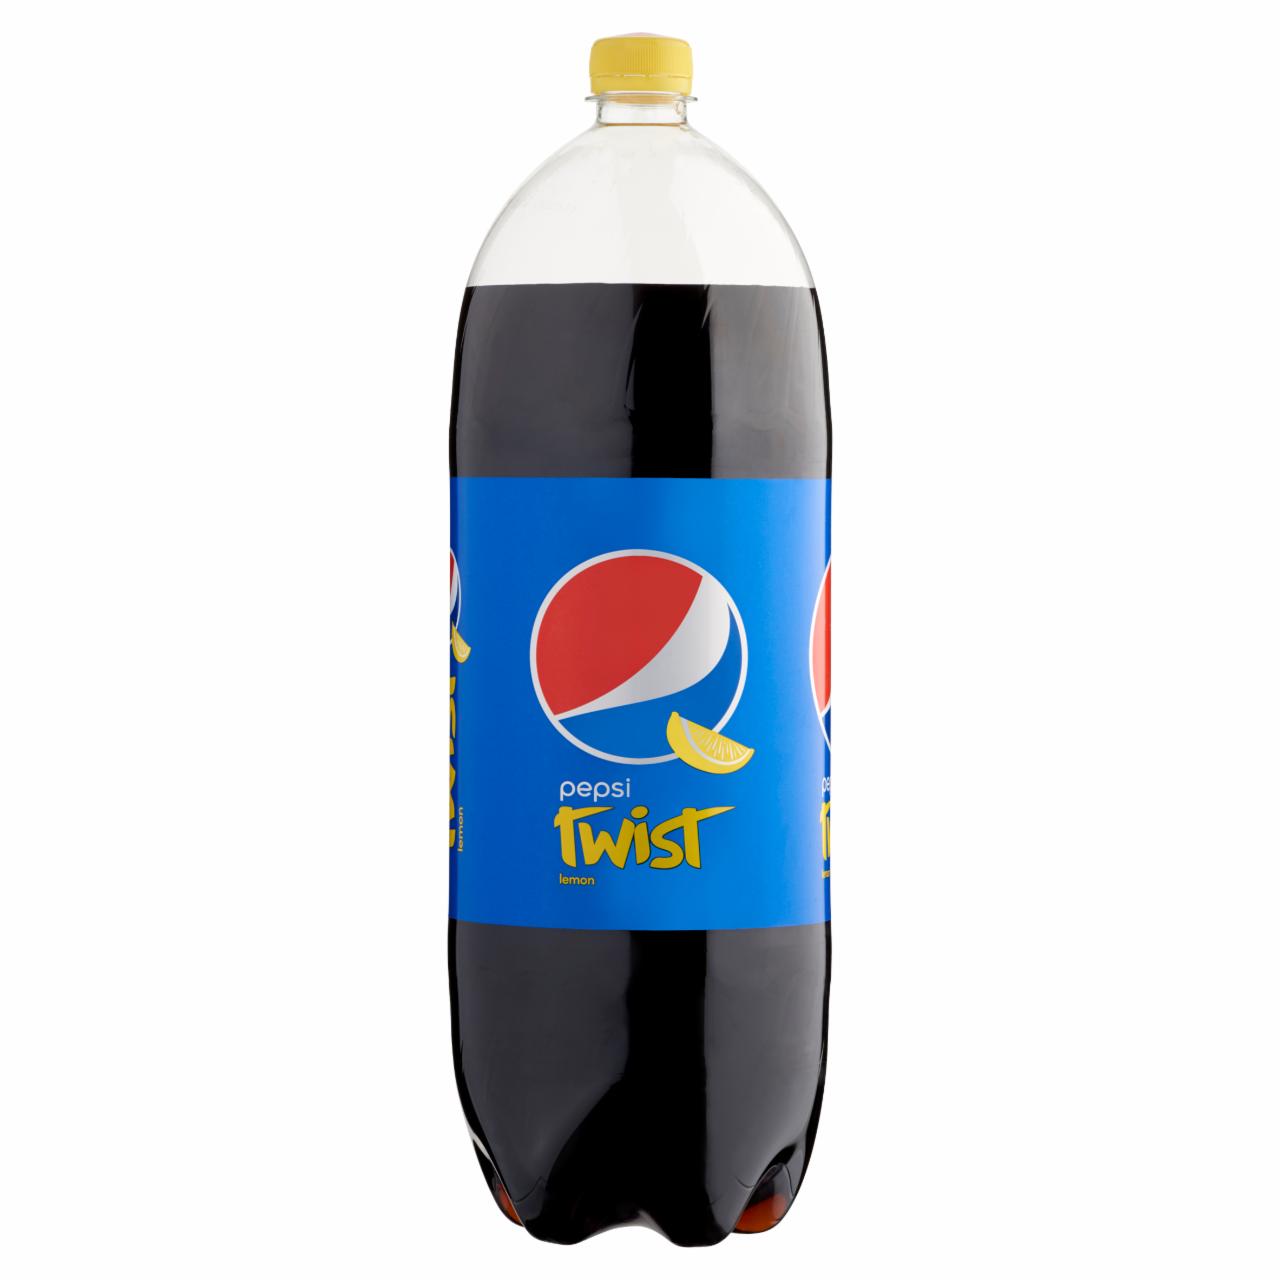 Képek - Pepsi Twist colaízű szénsavas üdítőital citrom aromával 2,5 l